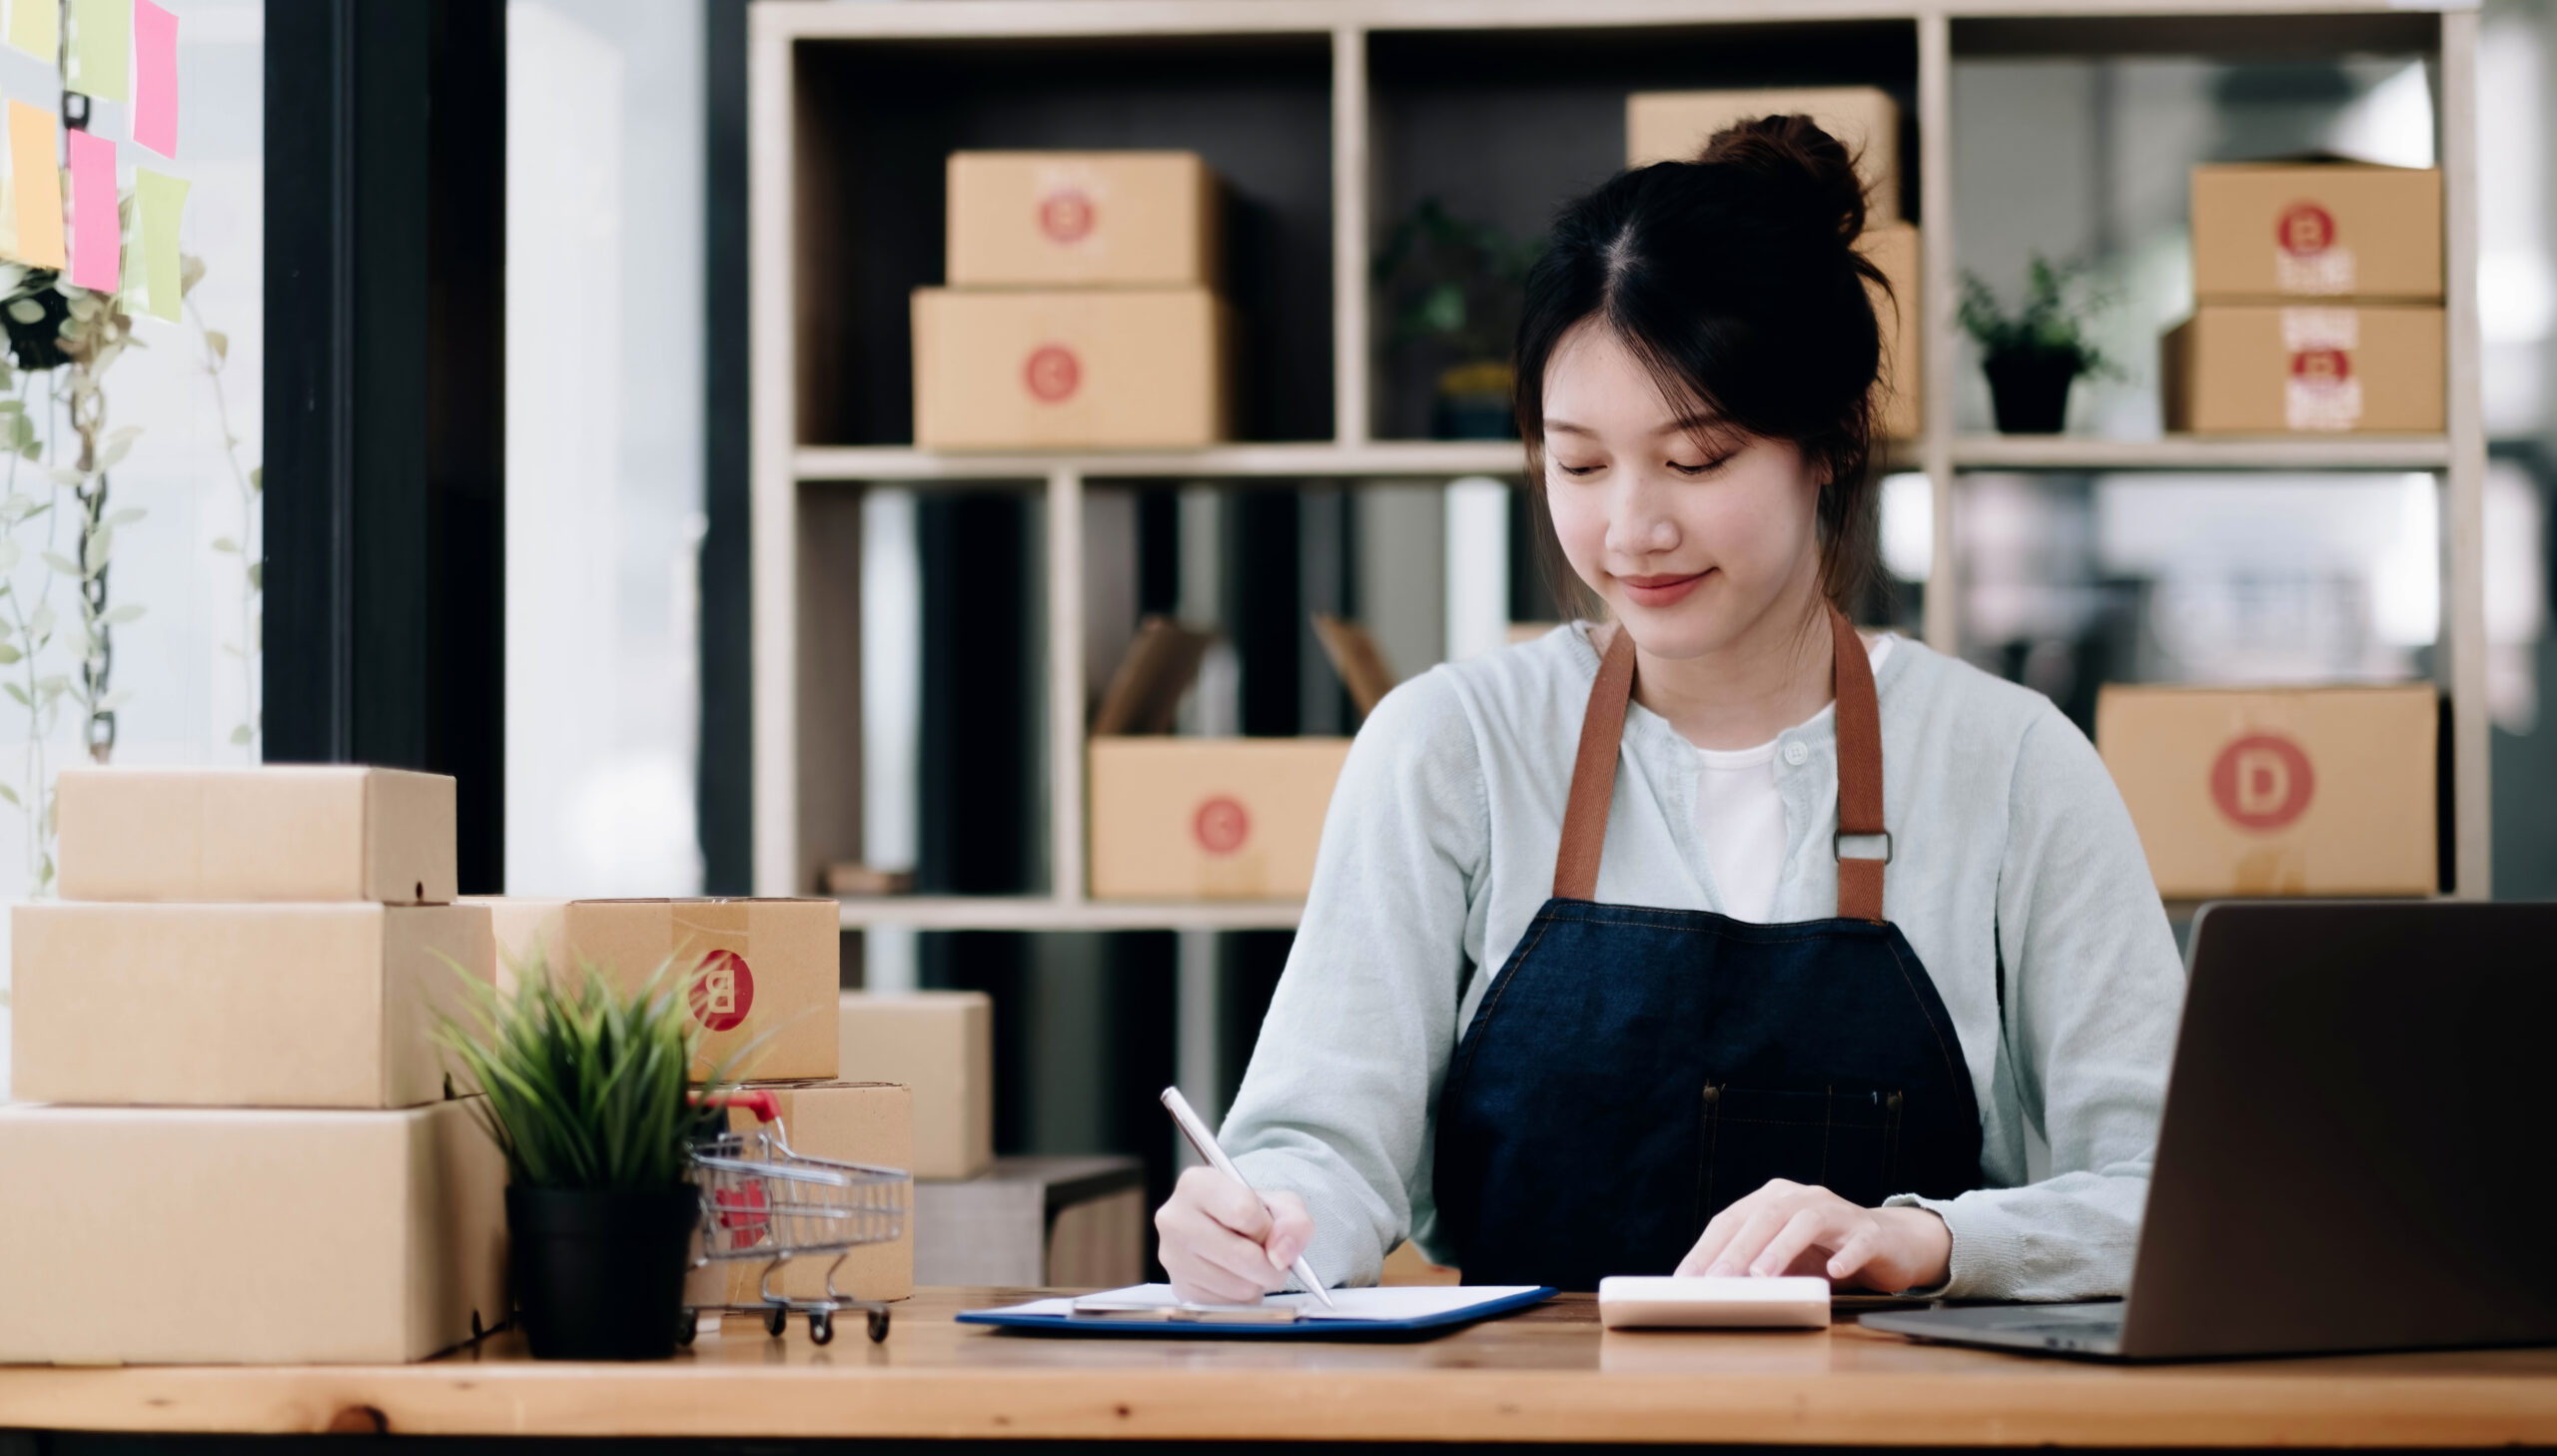 jovem asiática trabalhando com e-commerce; saiba mais sobre headless commerce neste artigo